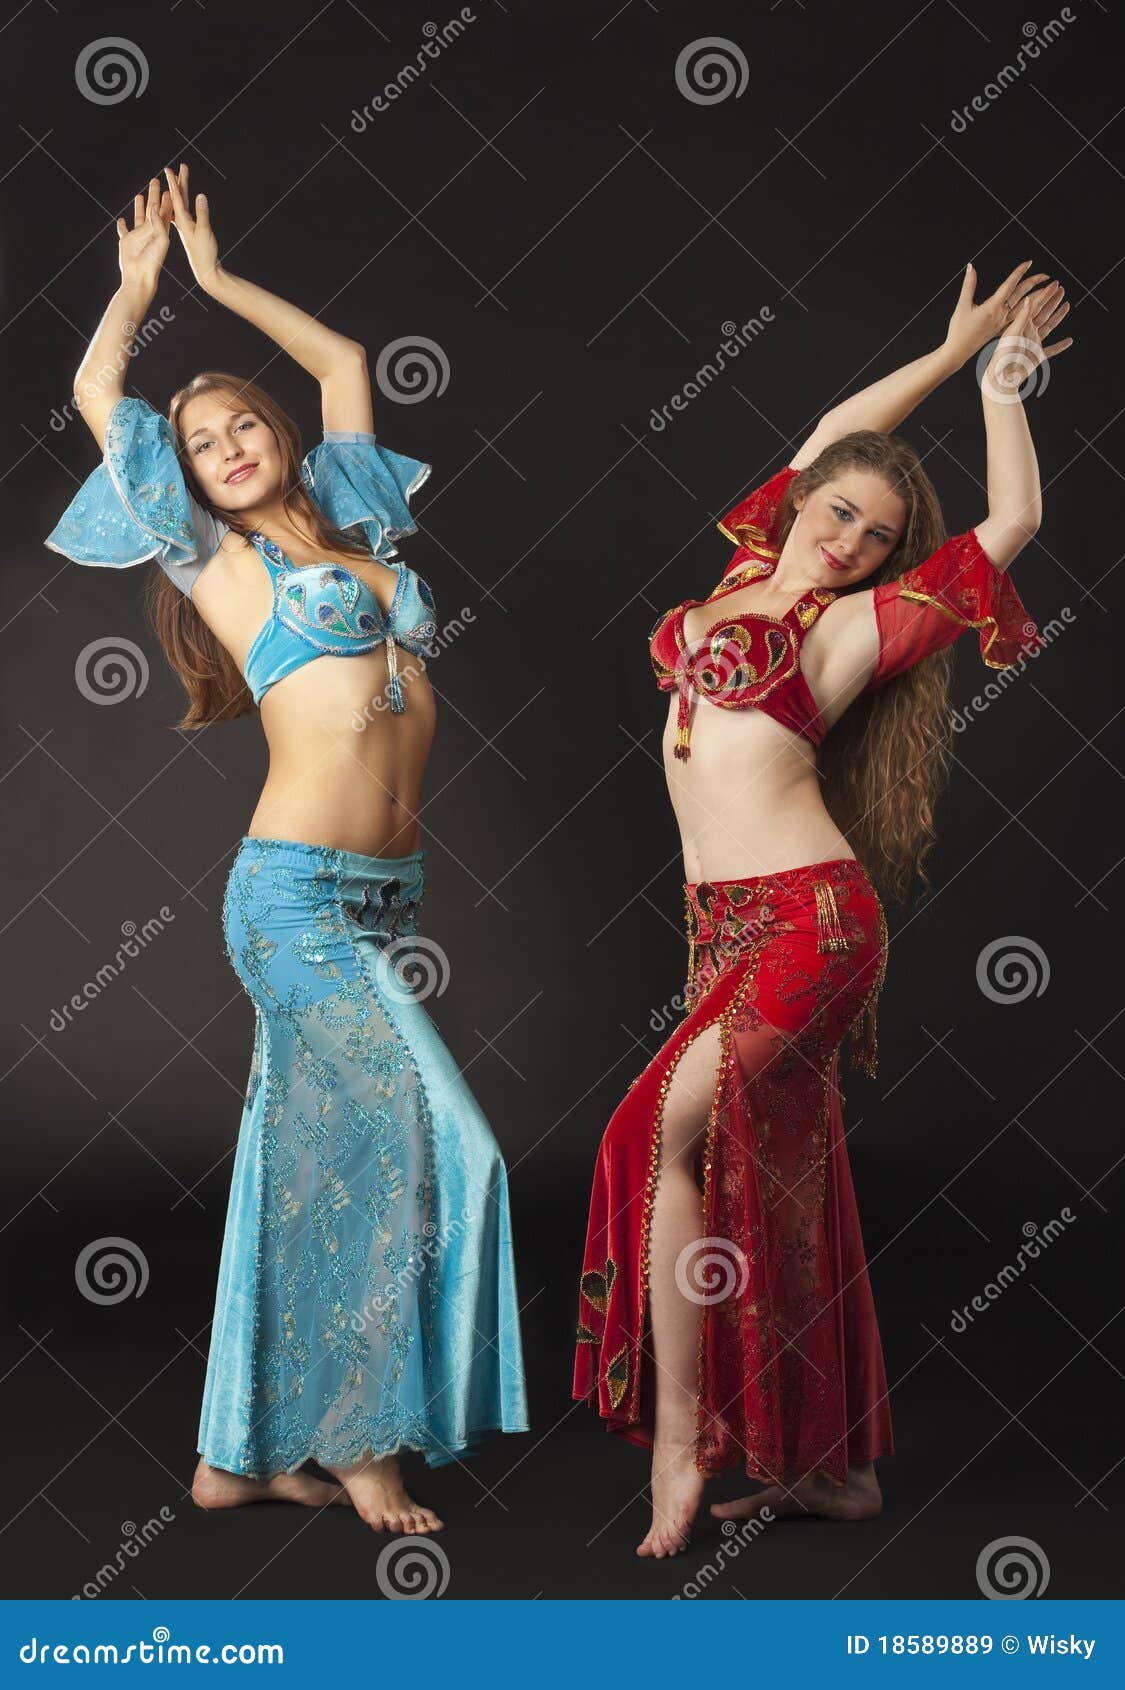 Danza Y Sonrisa De Mujeres En árabe Imagen de archivo Imagen ropa, vientre: 18589889